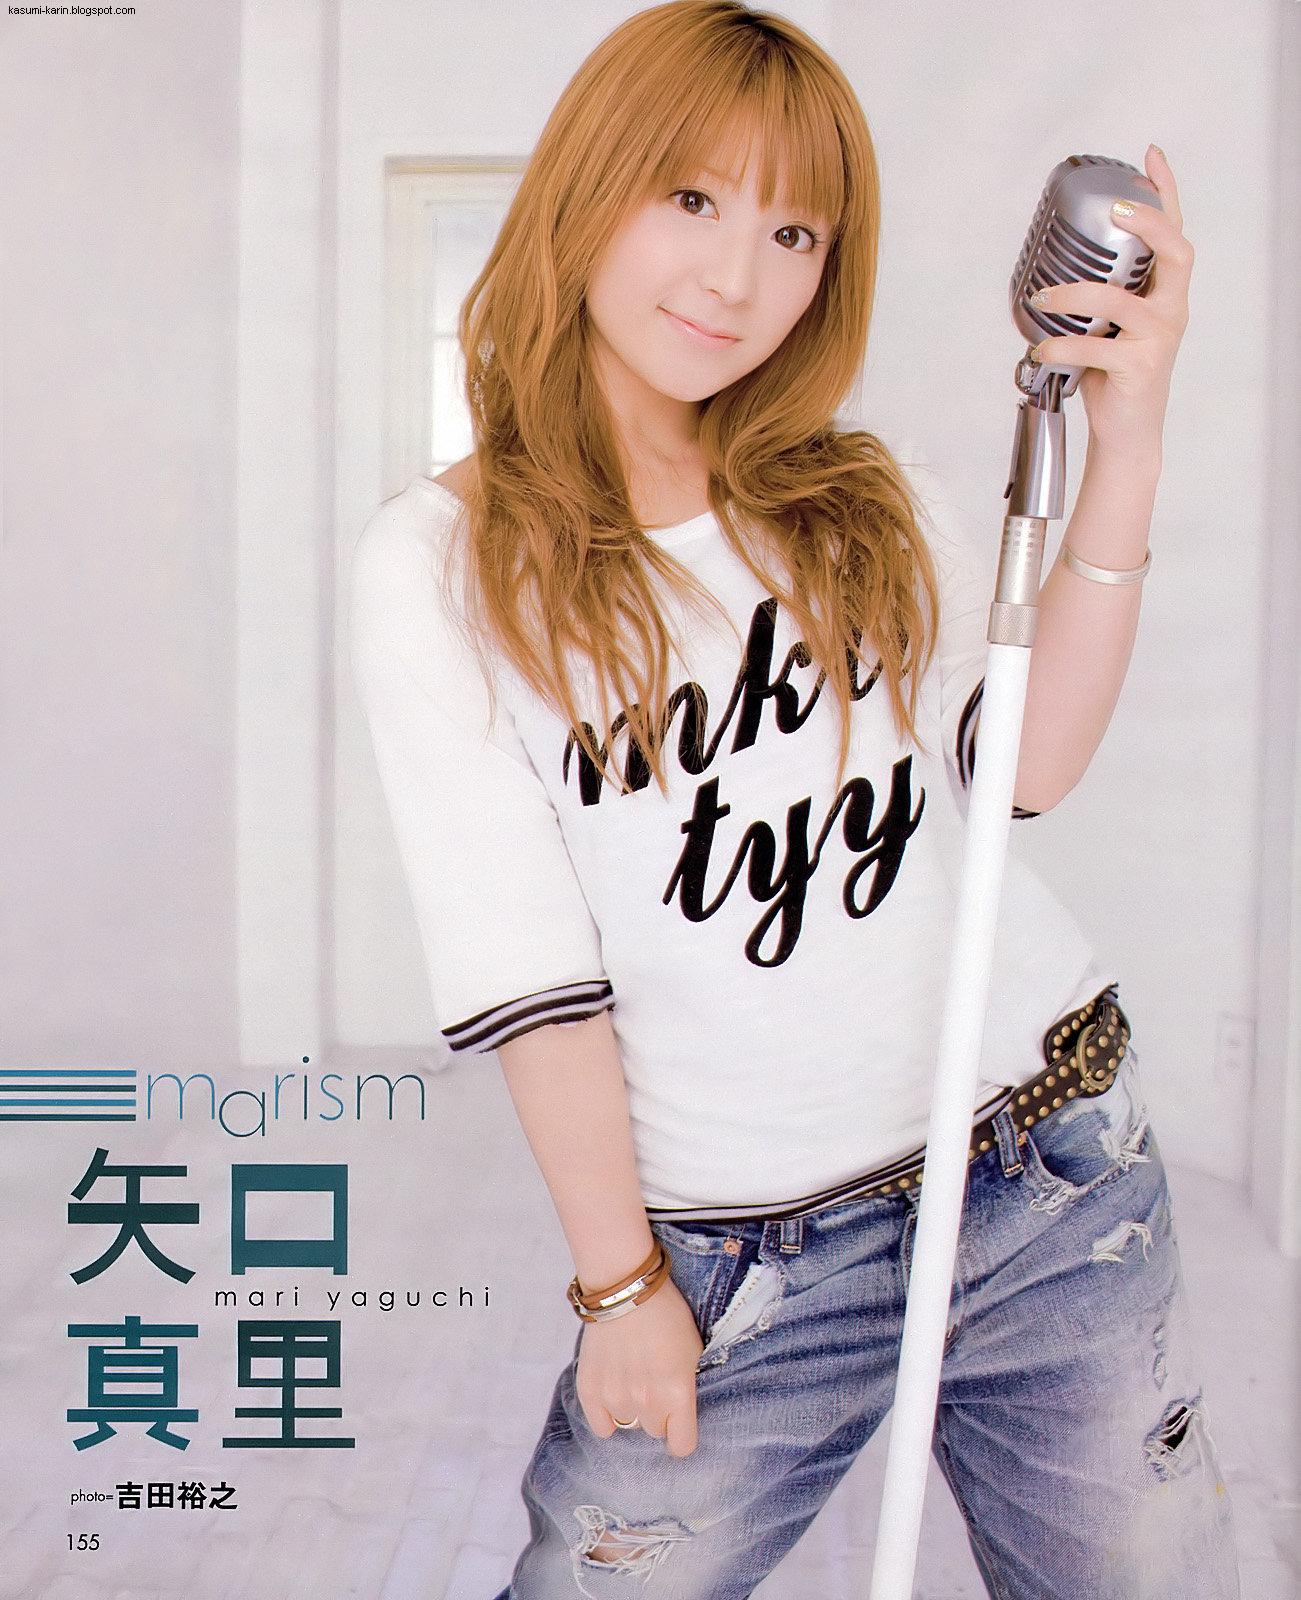 [mari+yaguchi+magazine+2009.jpg]